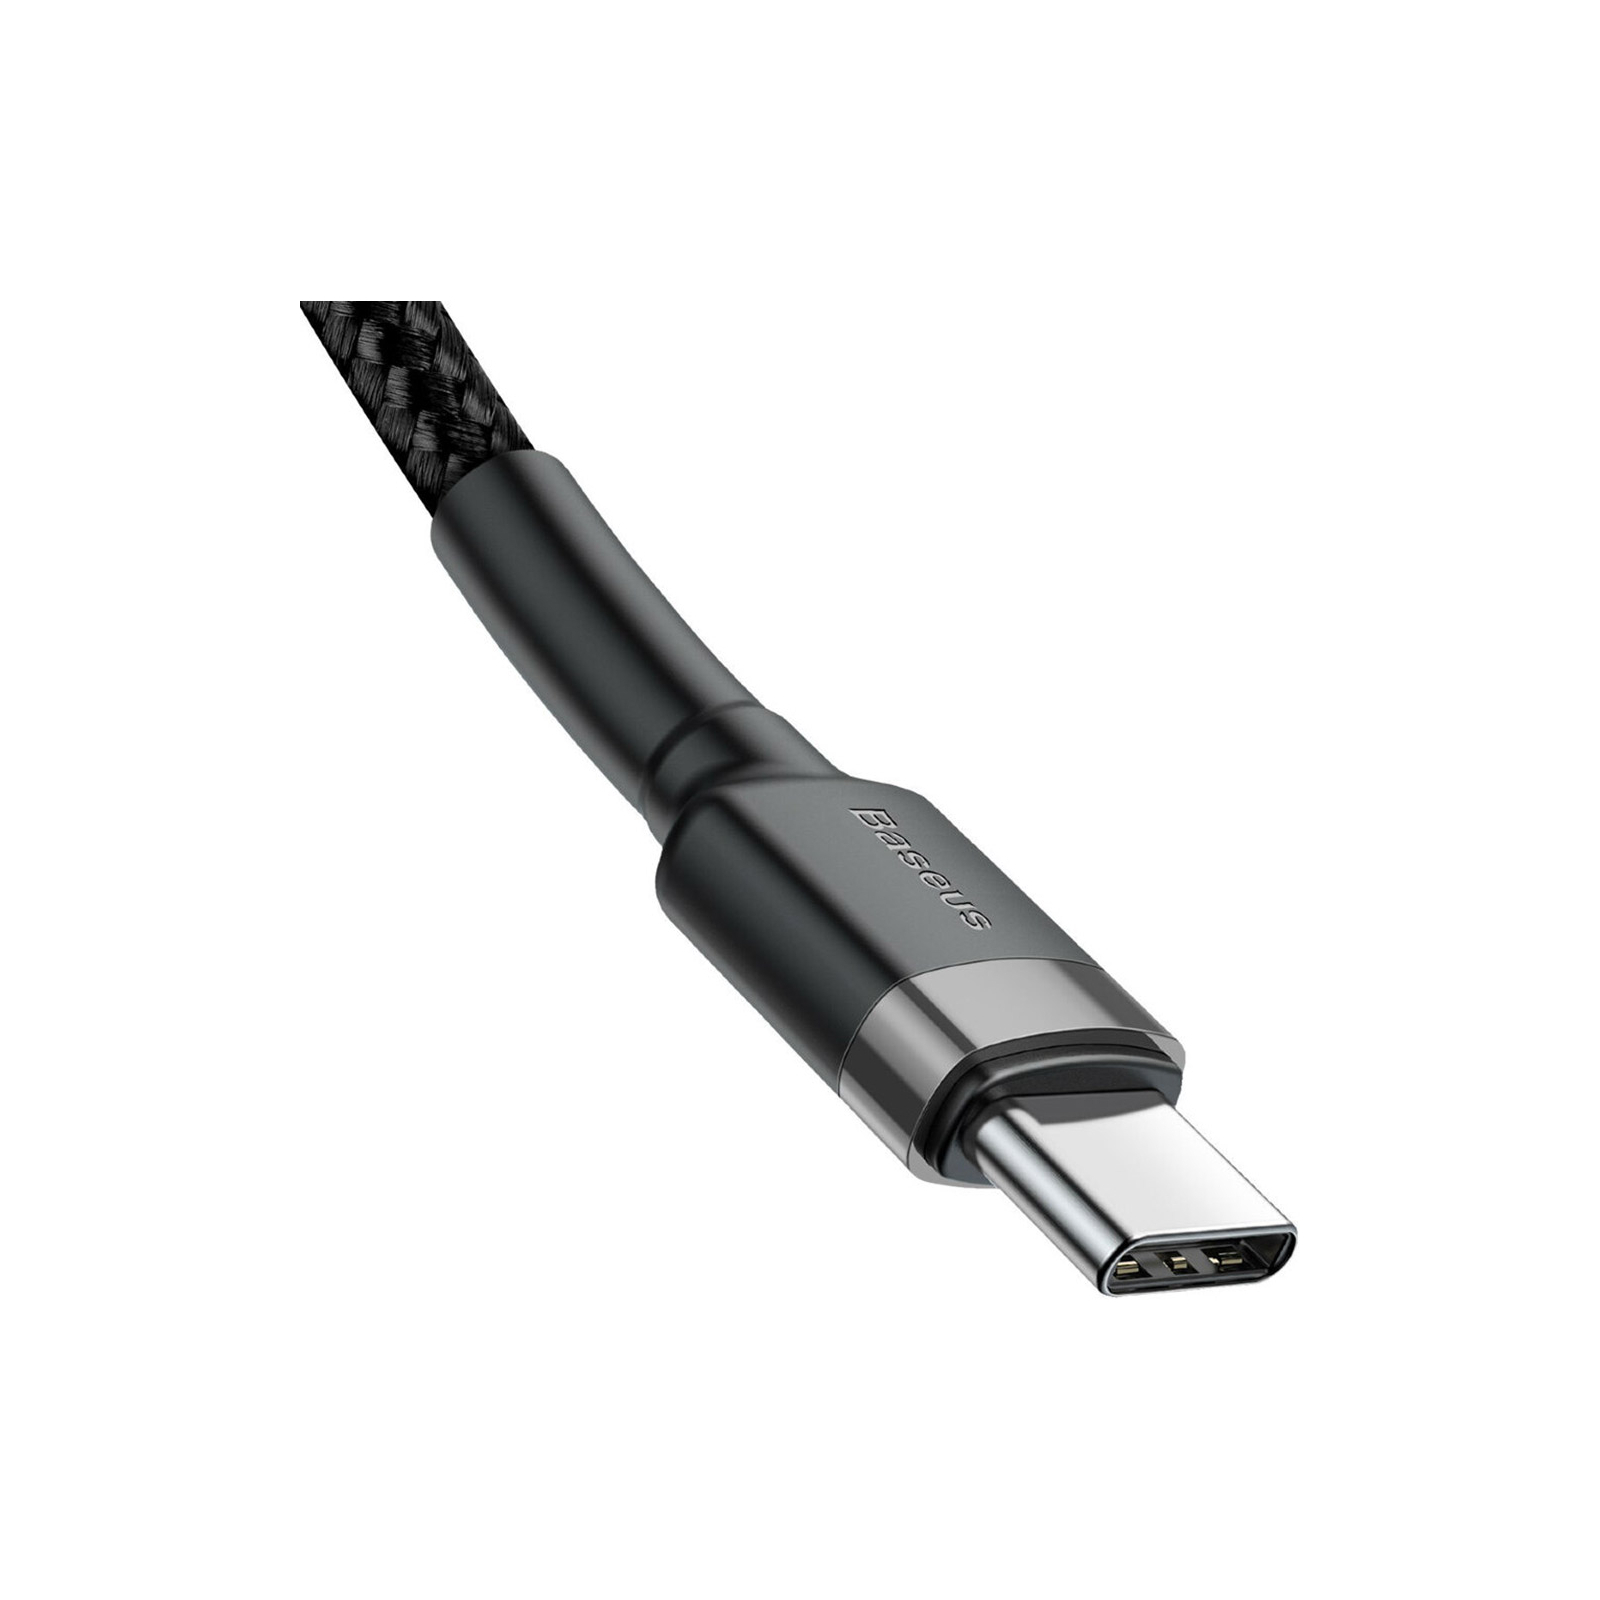 Дата кабель USB-C to USB-C 1.0m 3A 60W Cafule Black Baseus (CATKLF-GG1) изображение 3